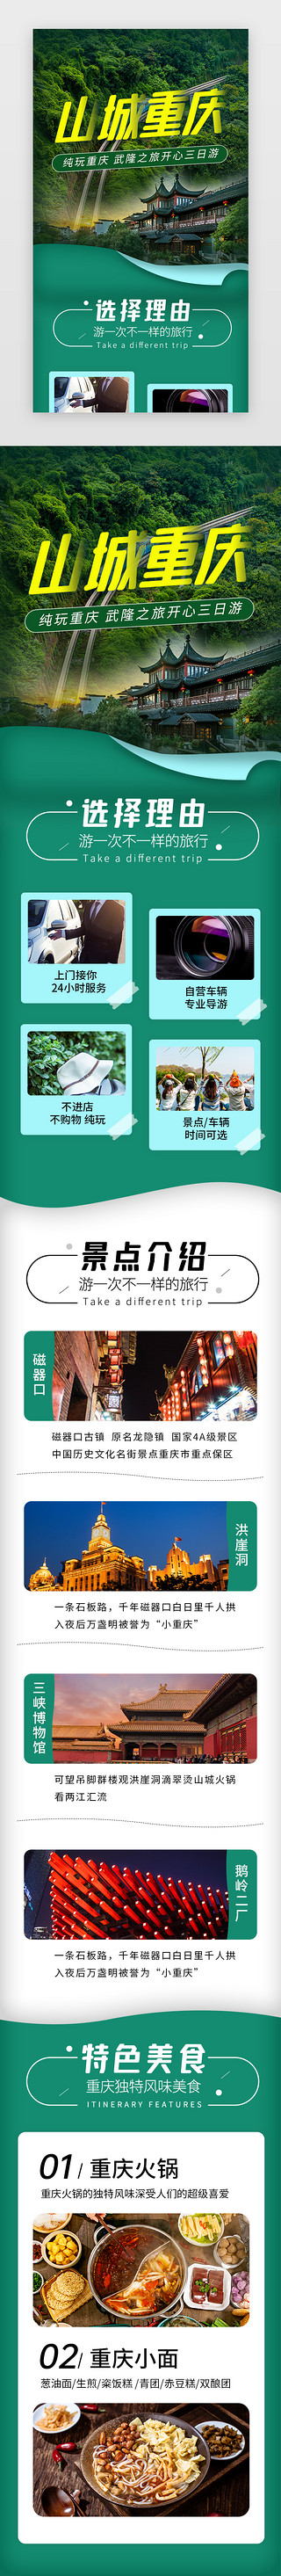 母亲节旅游UI设计素材_山城重庆旅游景点介绍H5长图